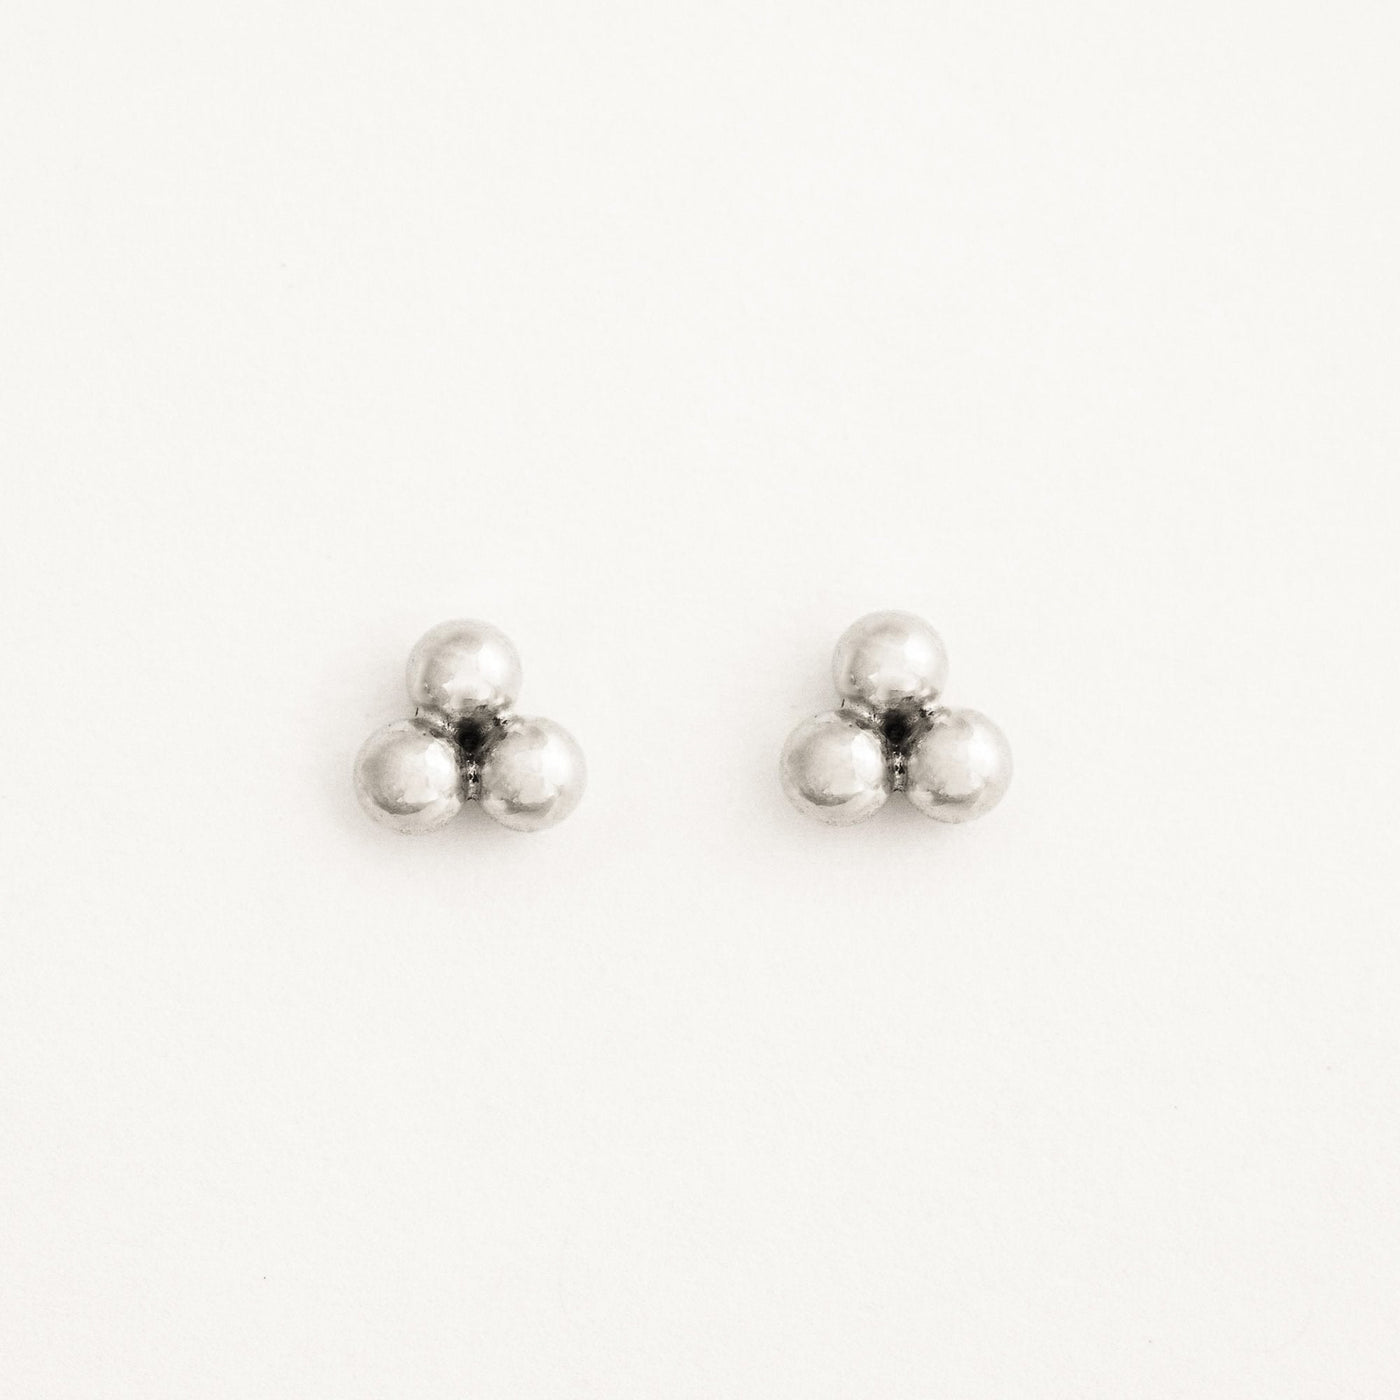 Triple Ball Stud Earrings by Simple & Dainty Jewelry